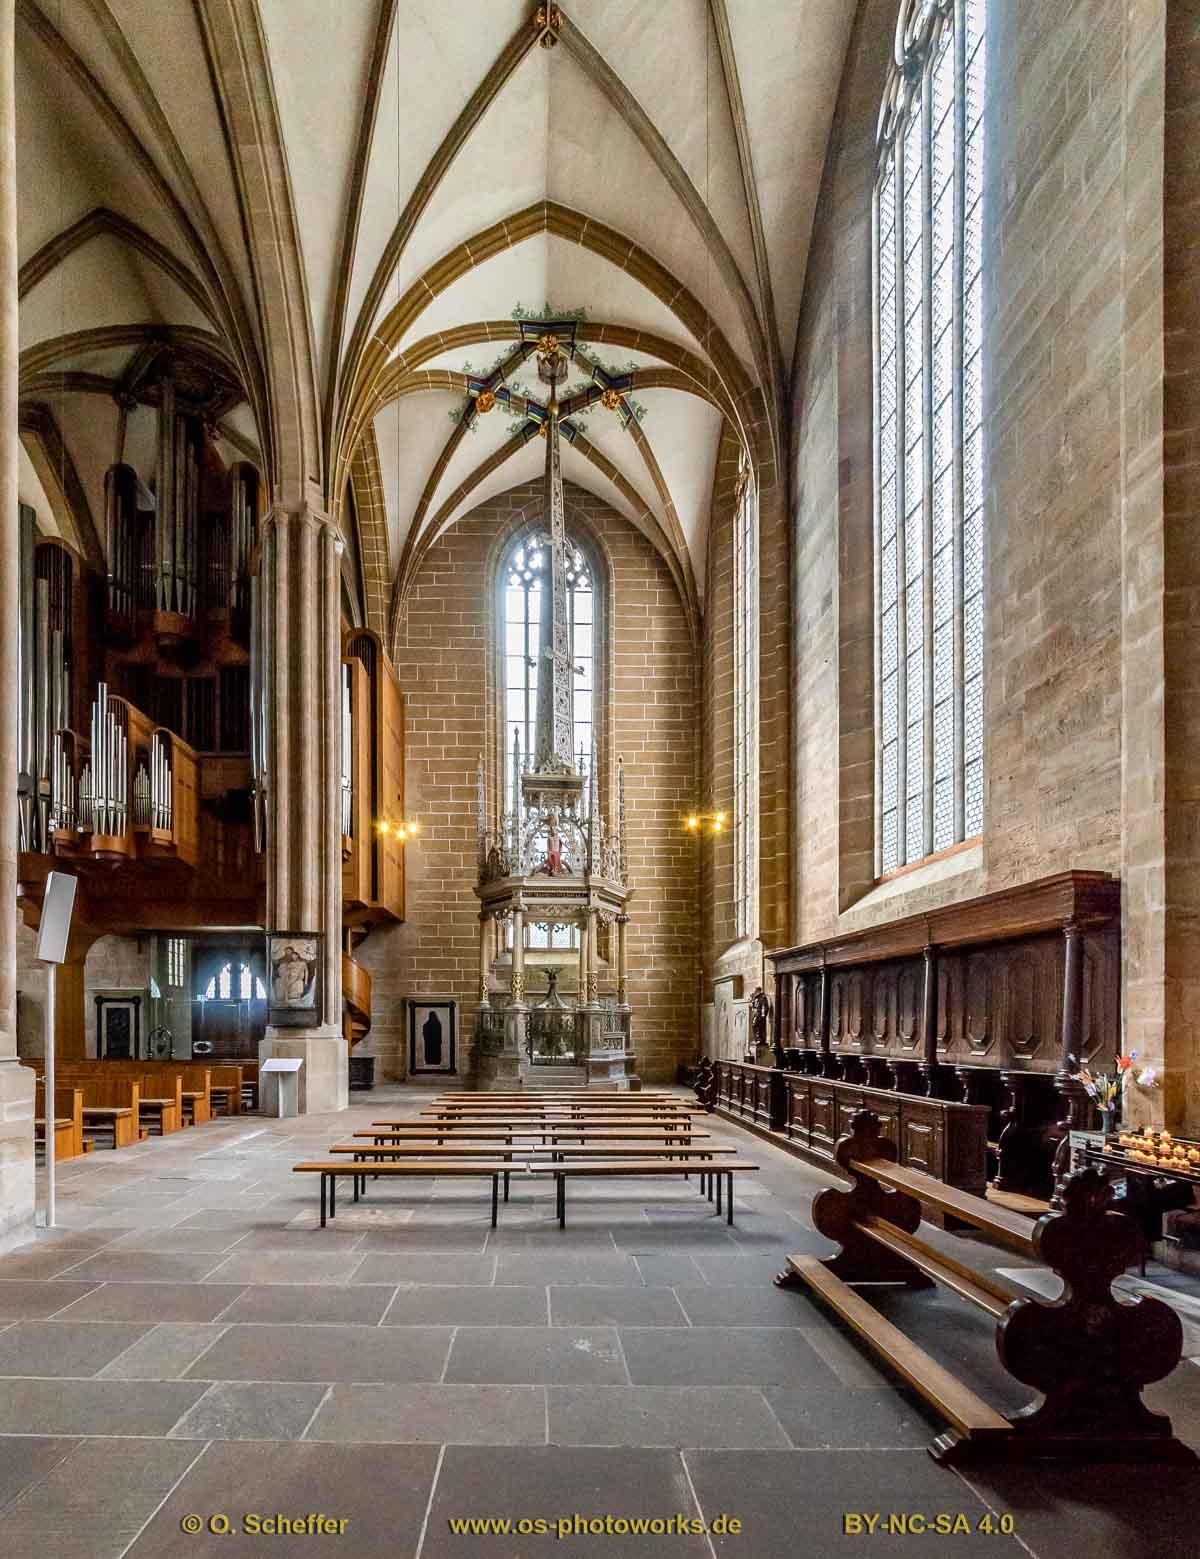 Dom und Severikirche